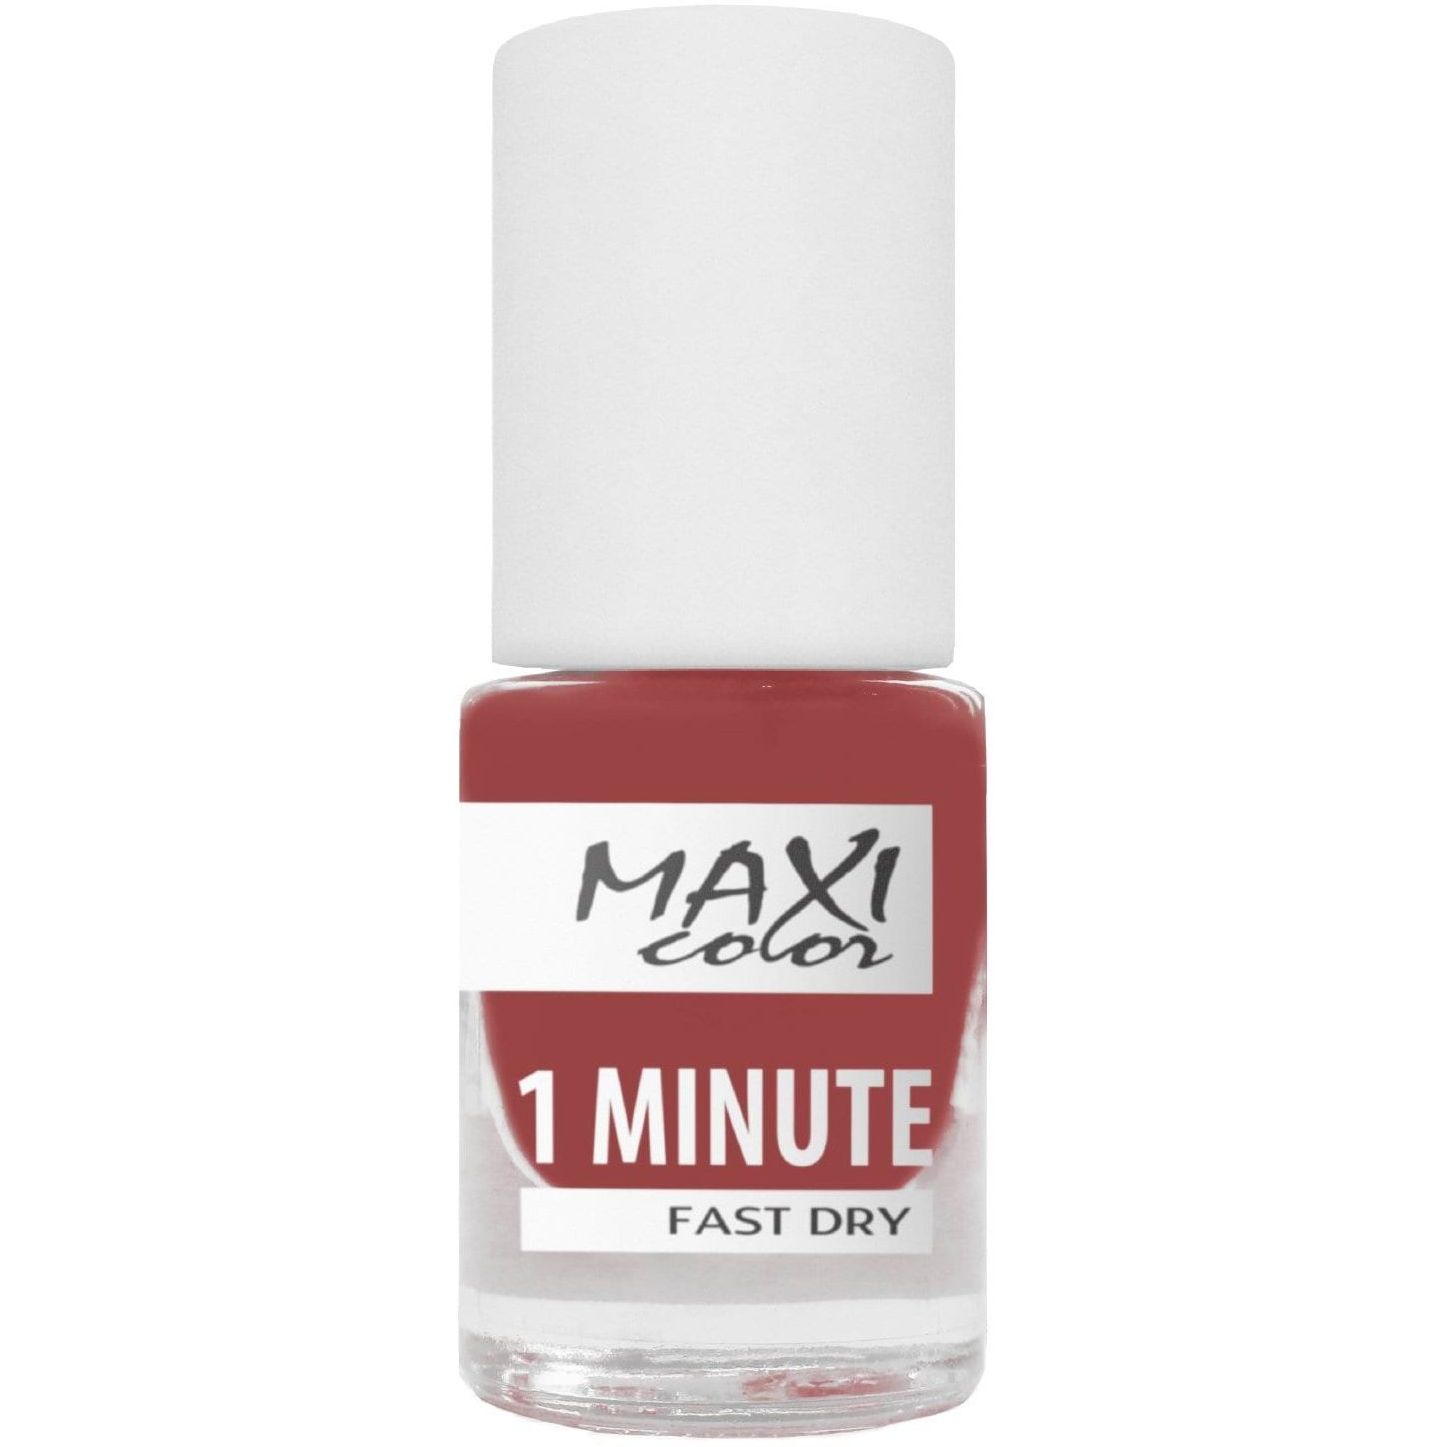 Лак для ногтей Maxi Color 1 Minute Fast Dry тон 046, 6 мл - фото 1